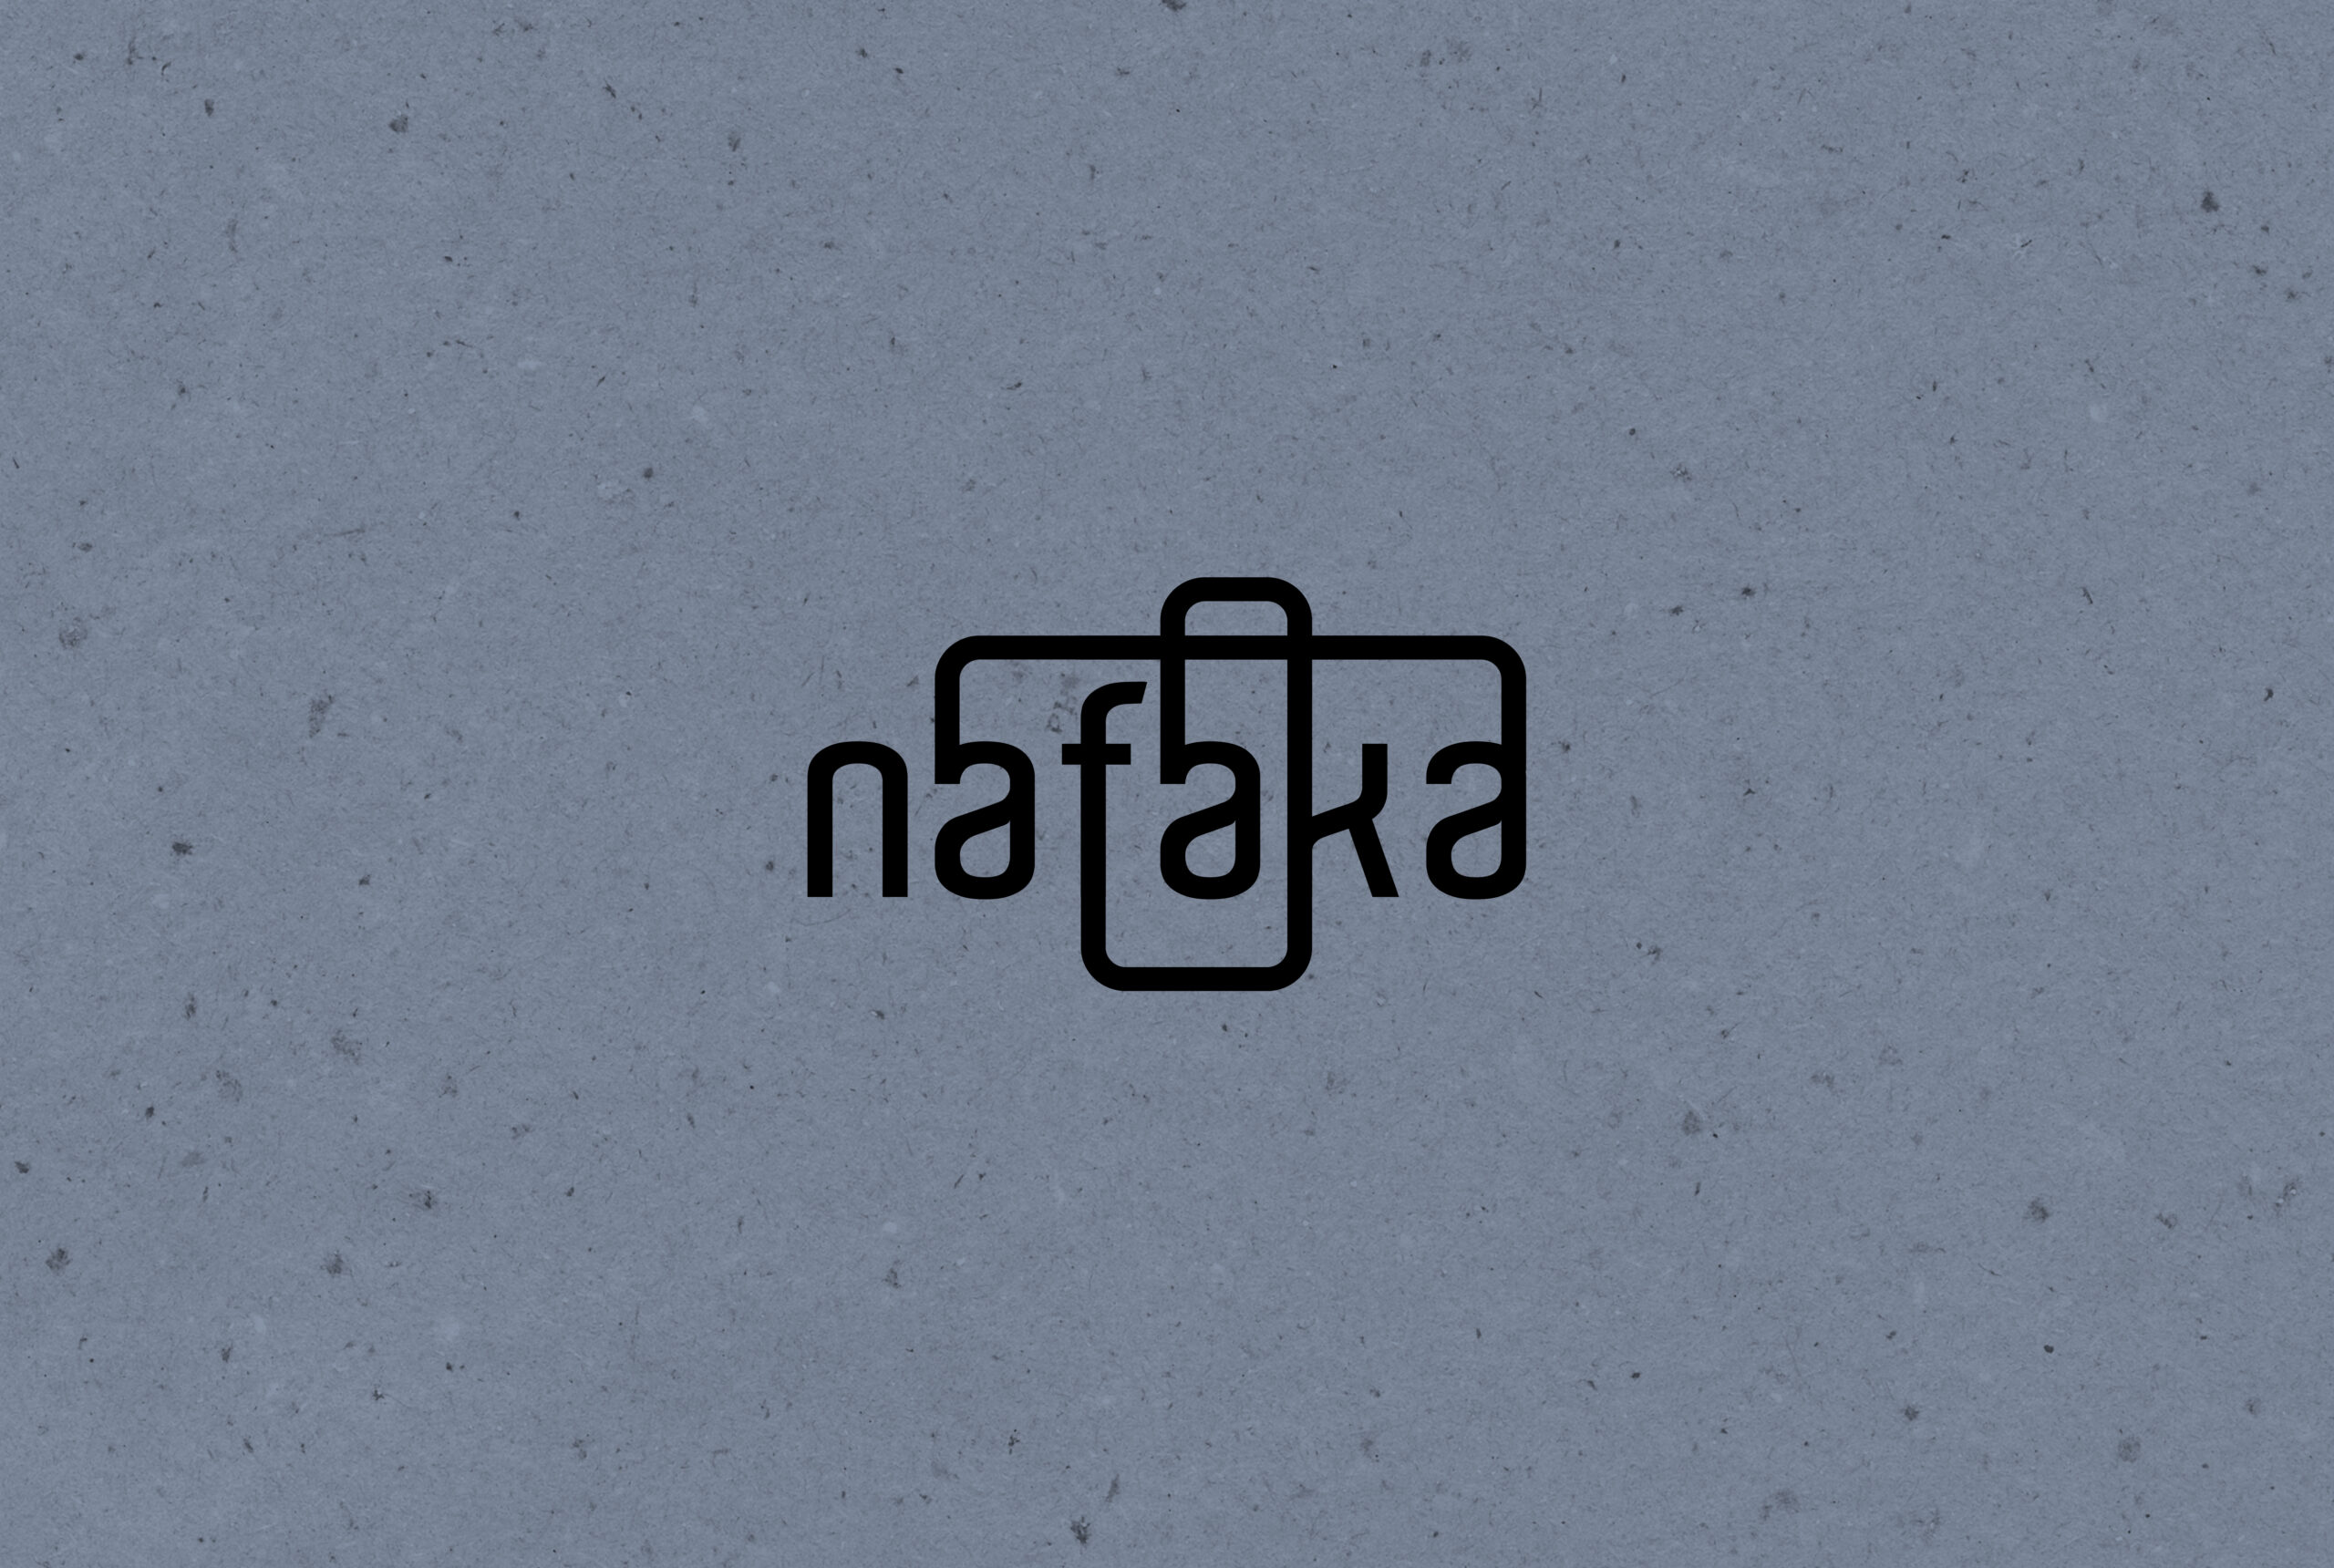 Nafaka